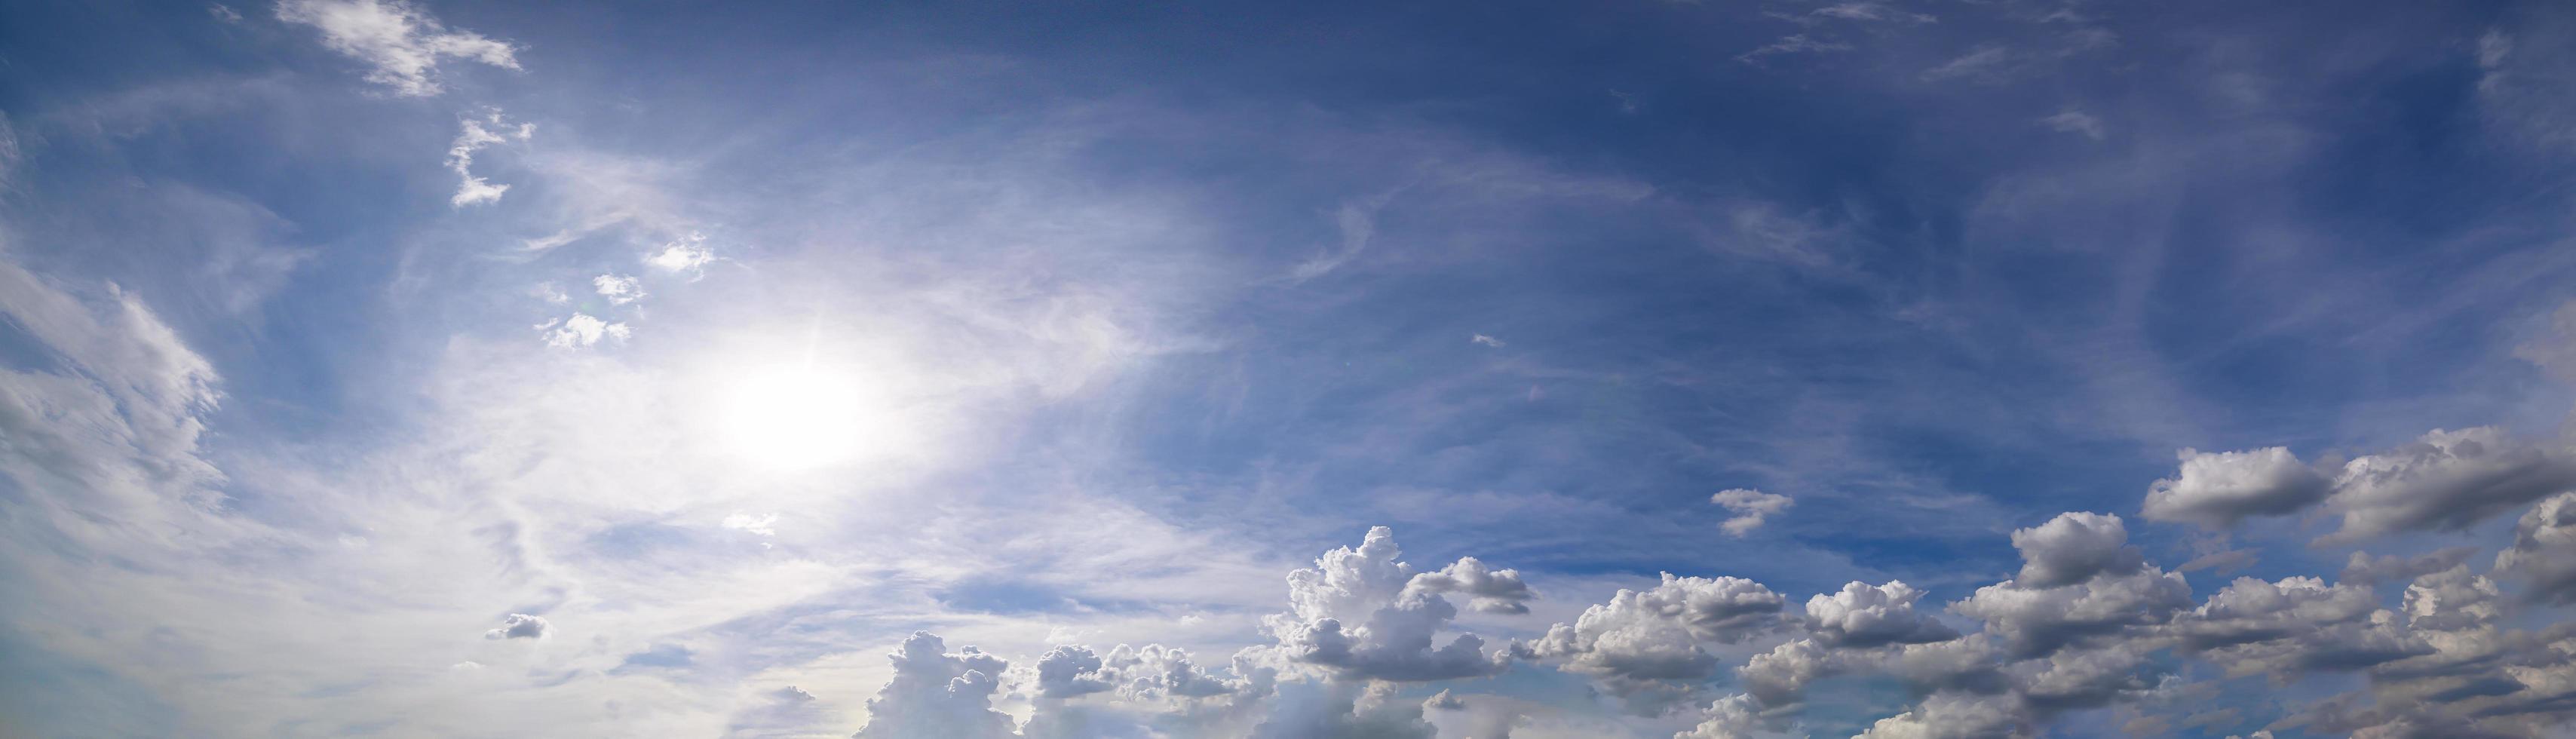 Panorama, Himmel und Wolken am Tag foto